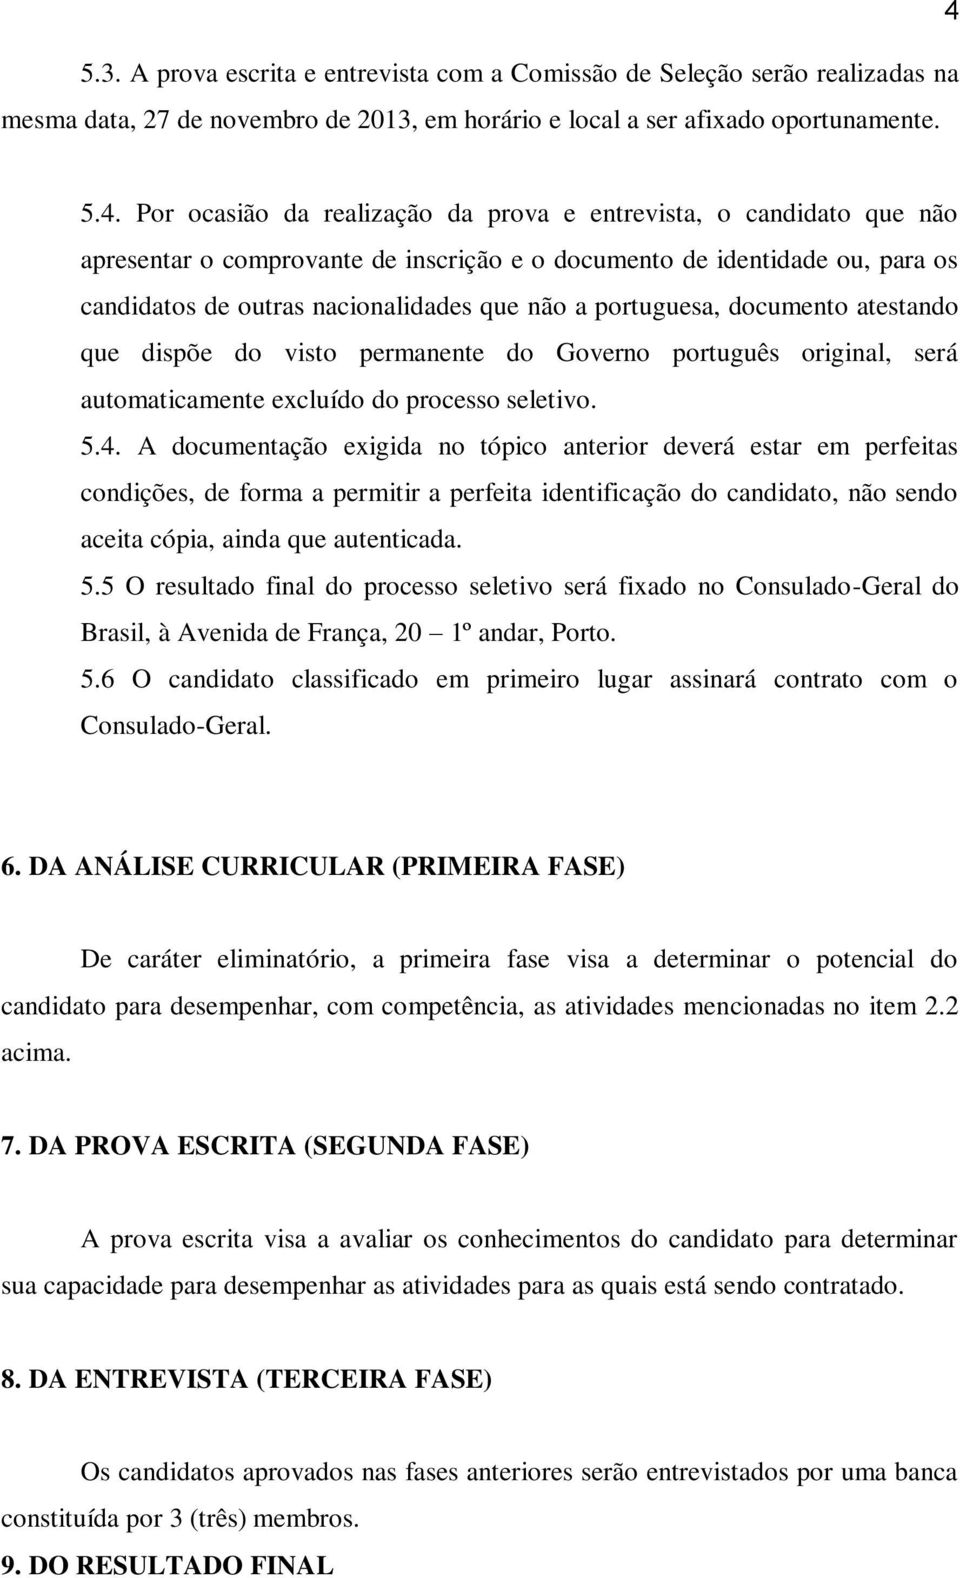 portuguesa, documento atestando que dispõe do visto permanente do Governo português original, será automaticamente excluído do processo seletivo. 5.4.